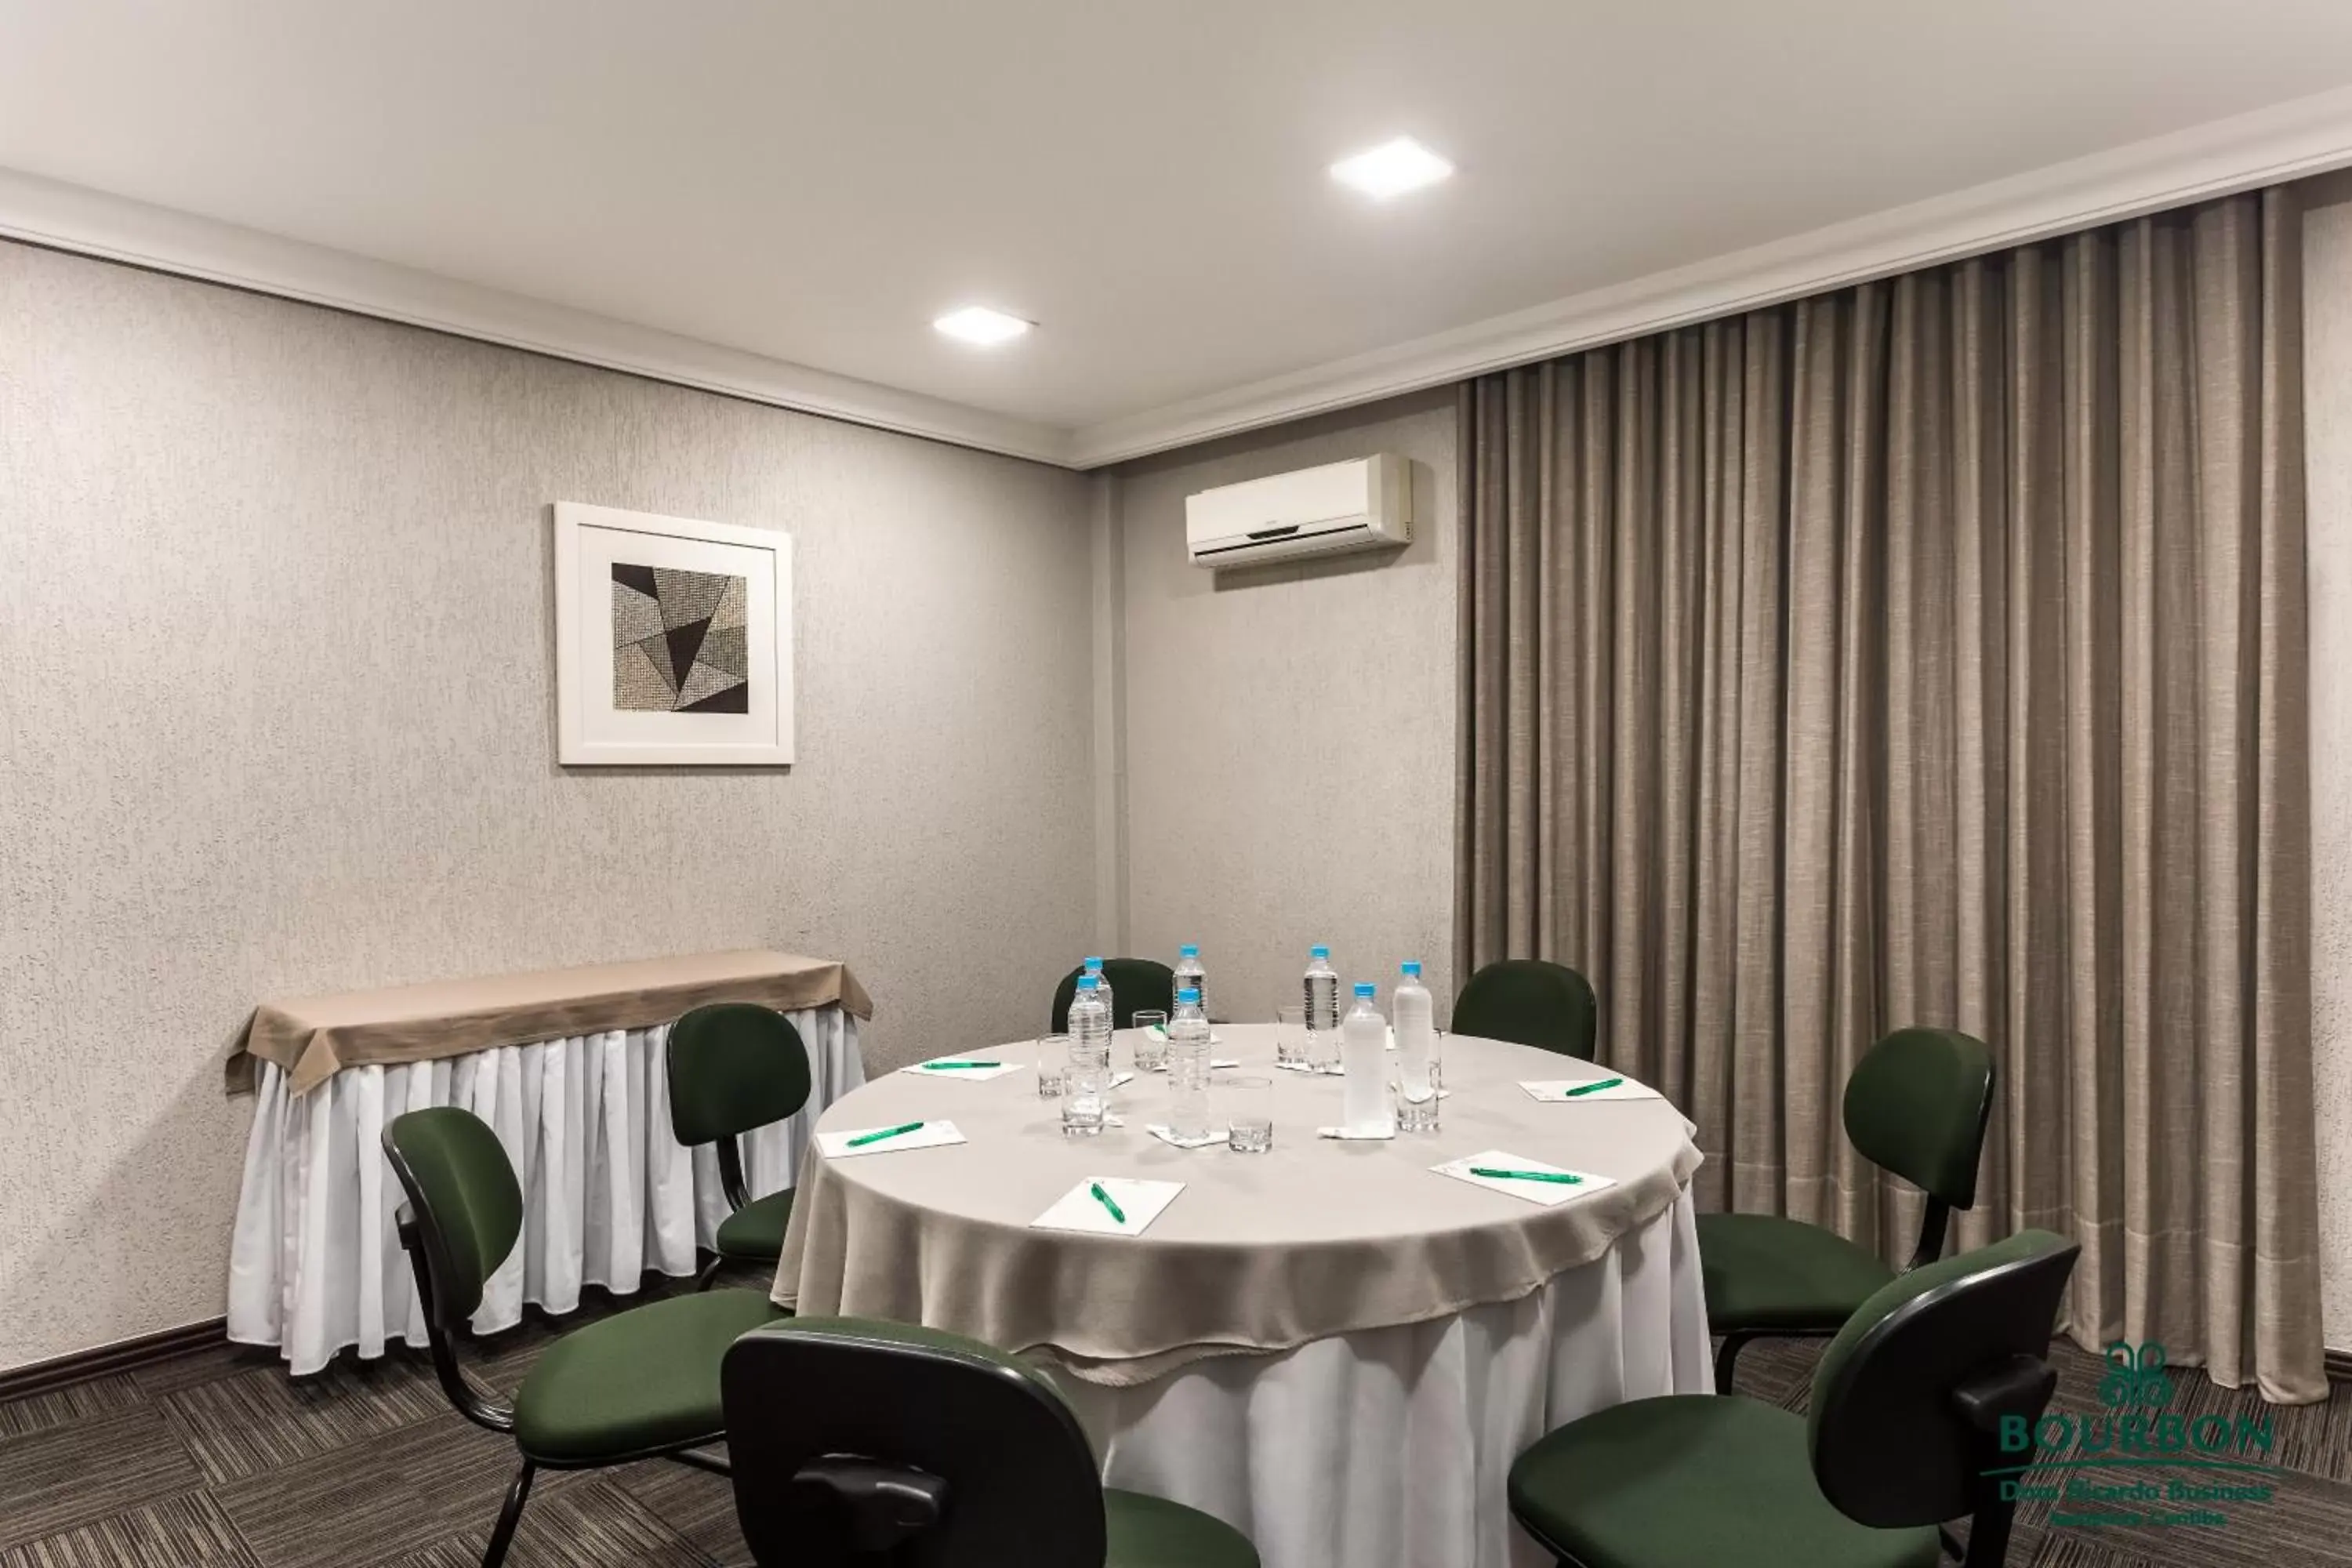 Meeting/conference room, Banquet Facilities in Bourbon Dom Ricardo Aeroporto Curitiba Business Hotel